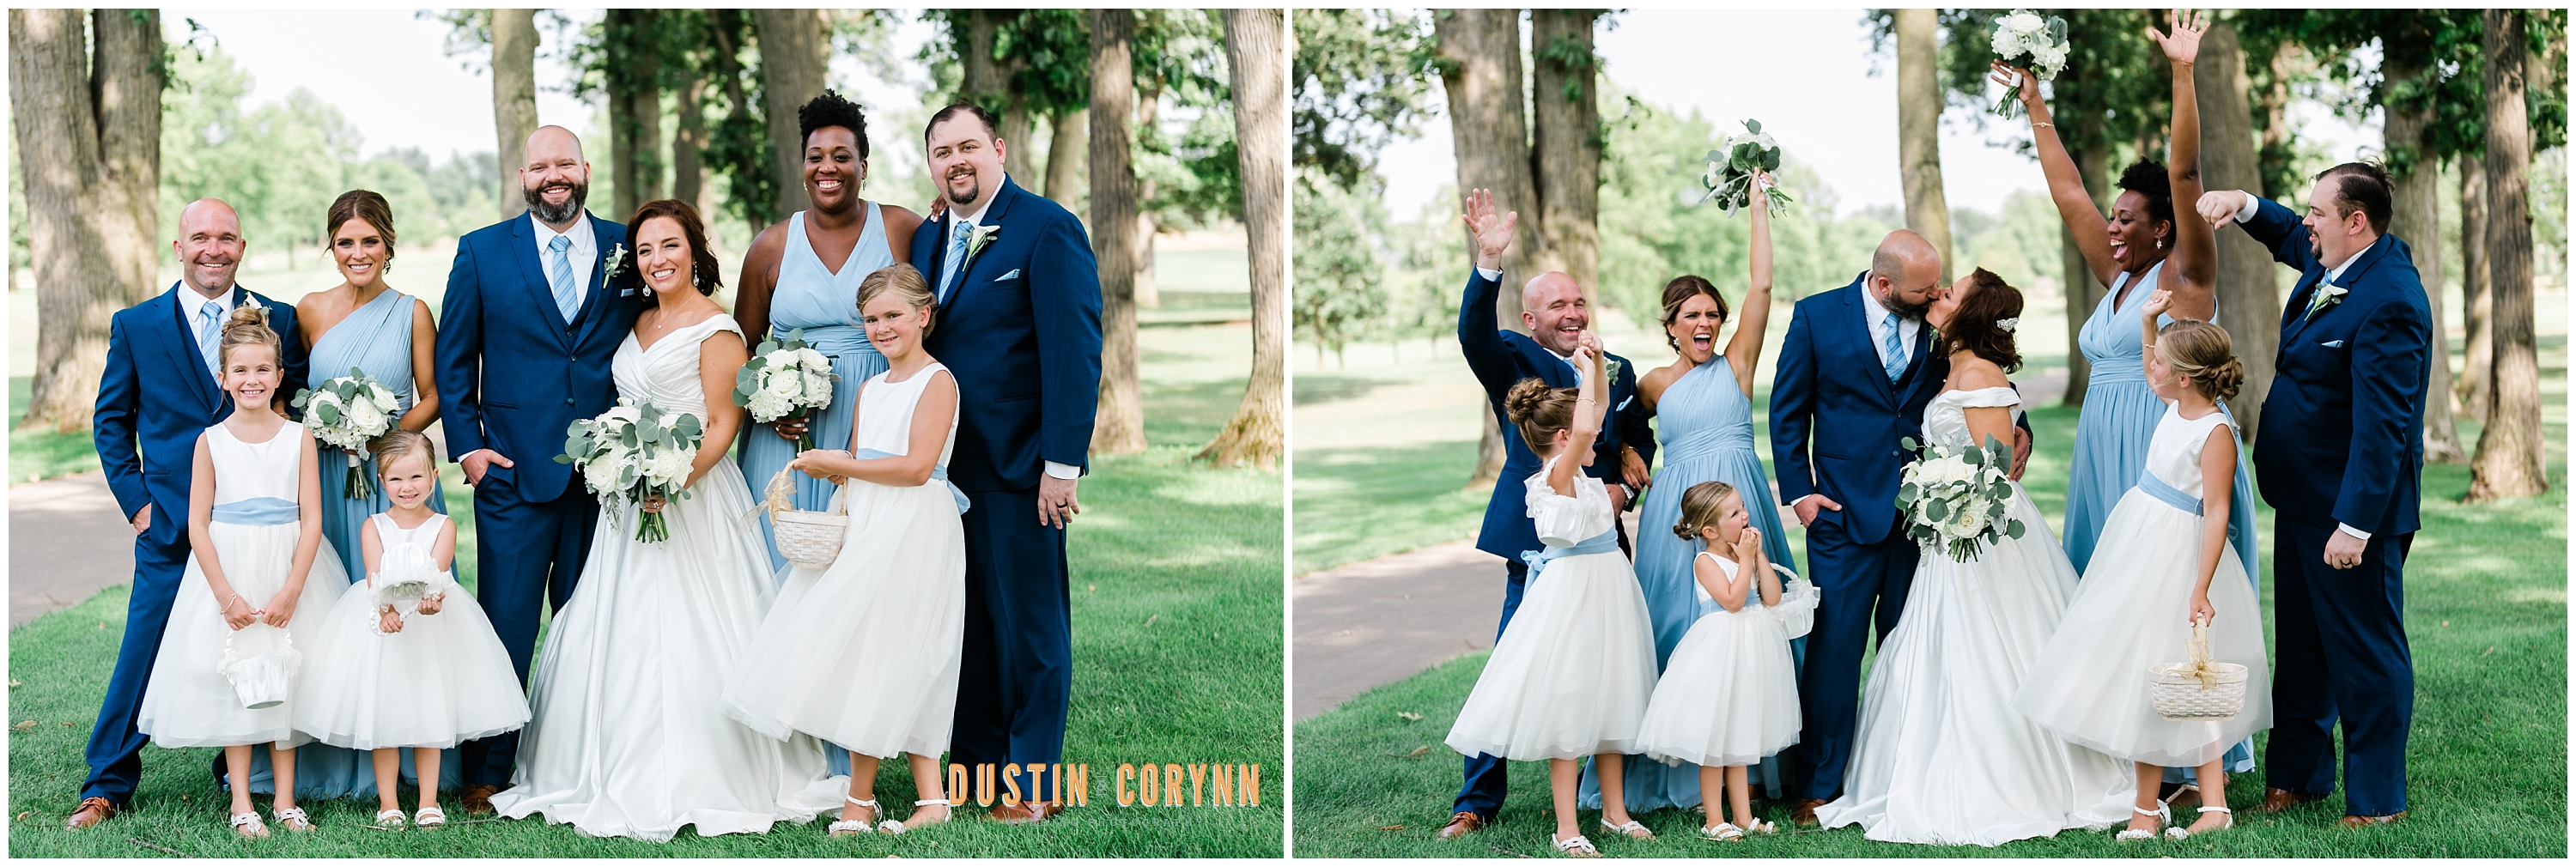 Pine Valley Wedding Fort Wayne | Dustin & Corynn Wedding ...